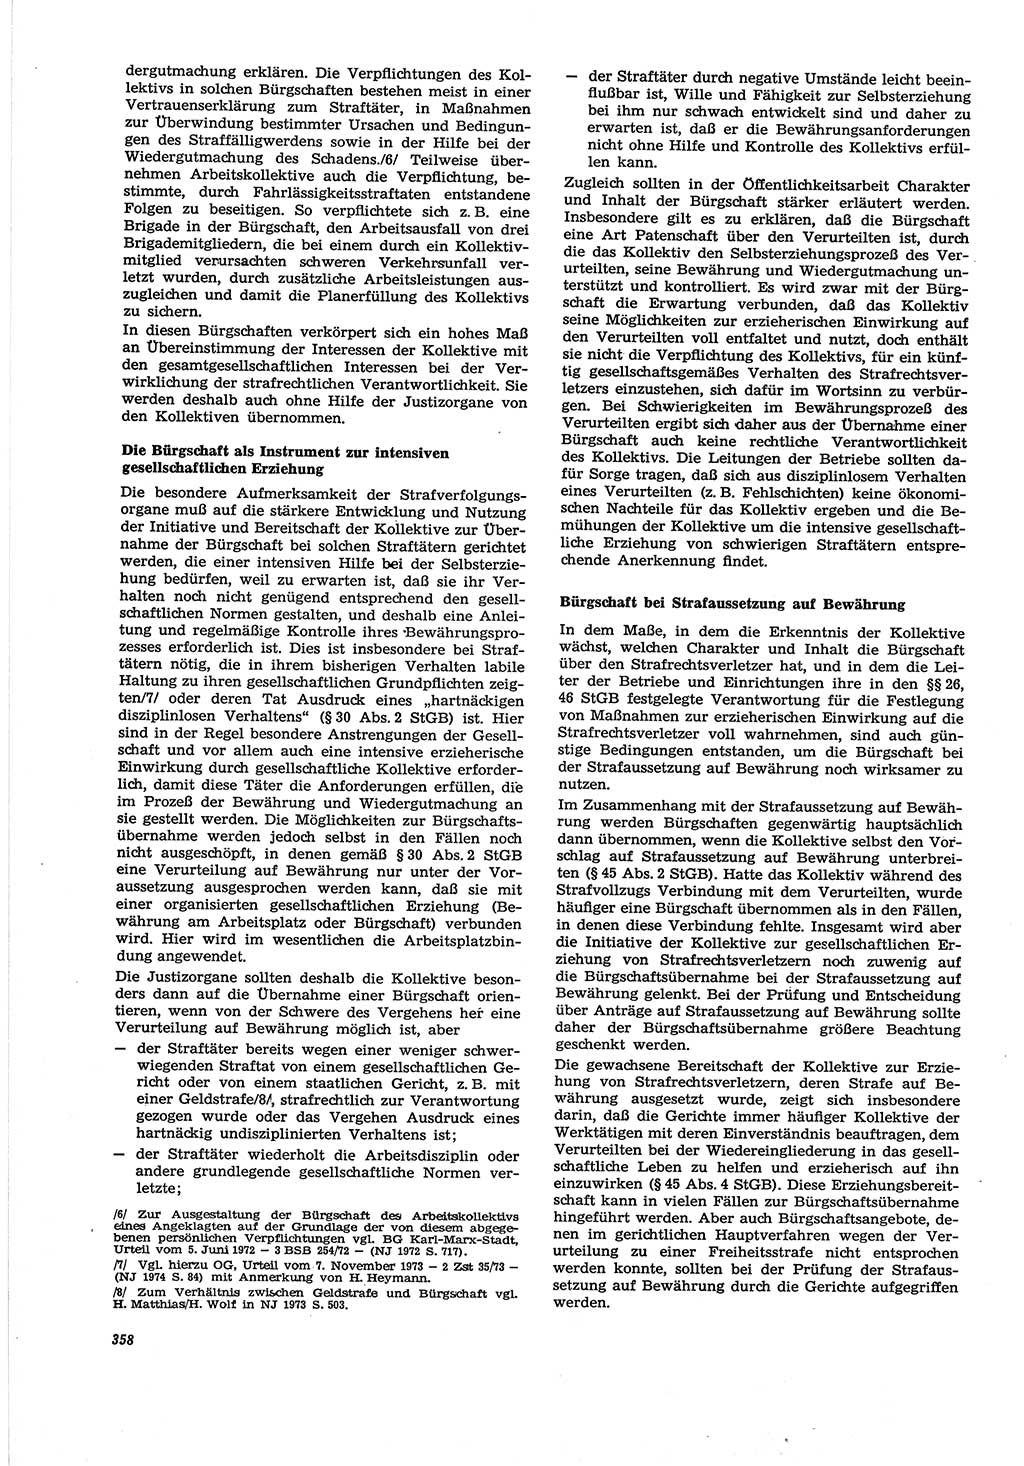 Neue Justiz (NJ), Zeitschrift für Recht und Rechtswissenschaft [Deutsche Demokratische Republik (DDR)], 30. Jahrgang 1976, Seite 358 (NJ DDR 1976, S. 358)